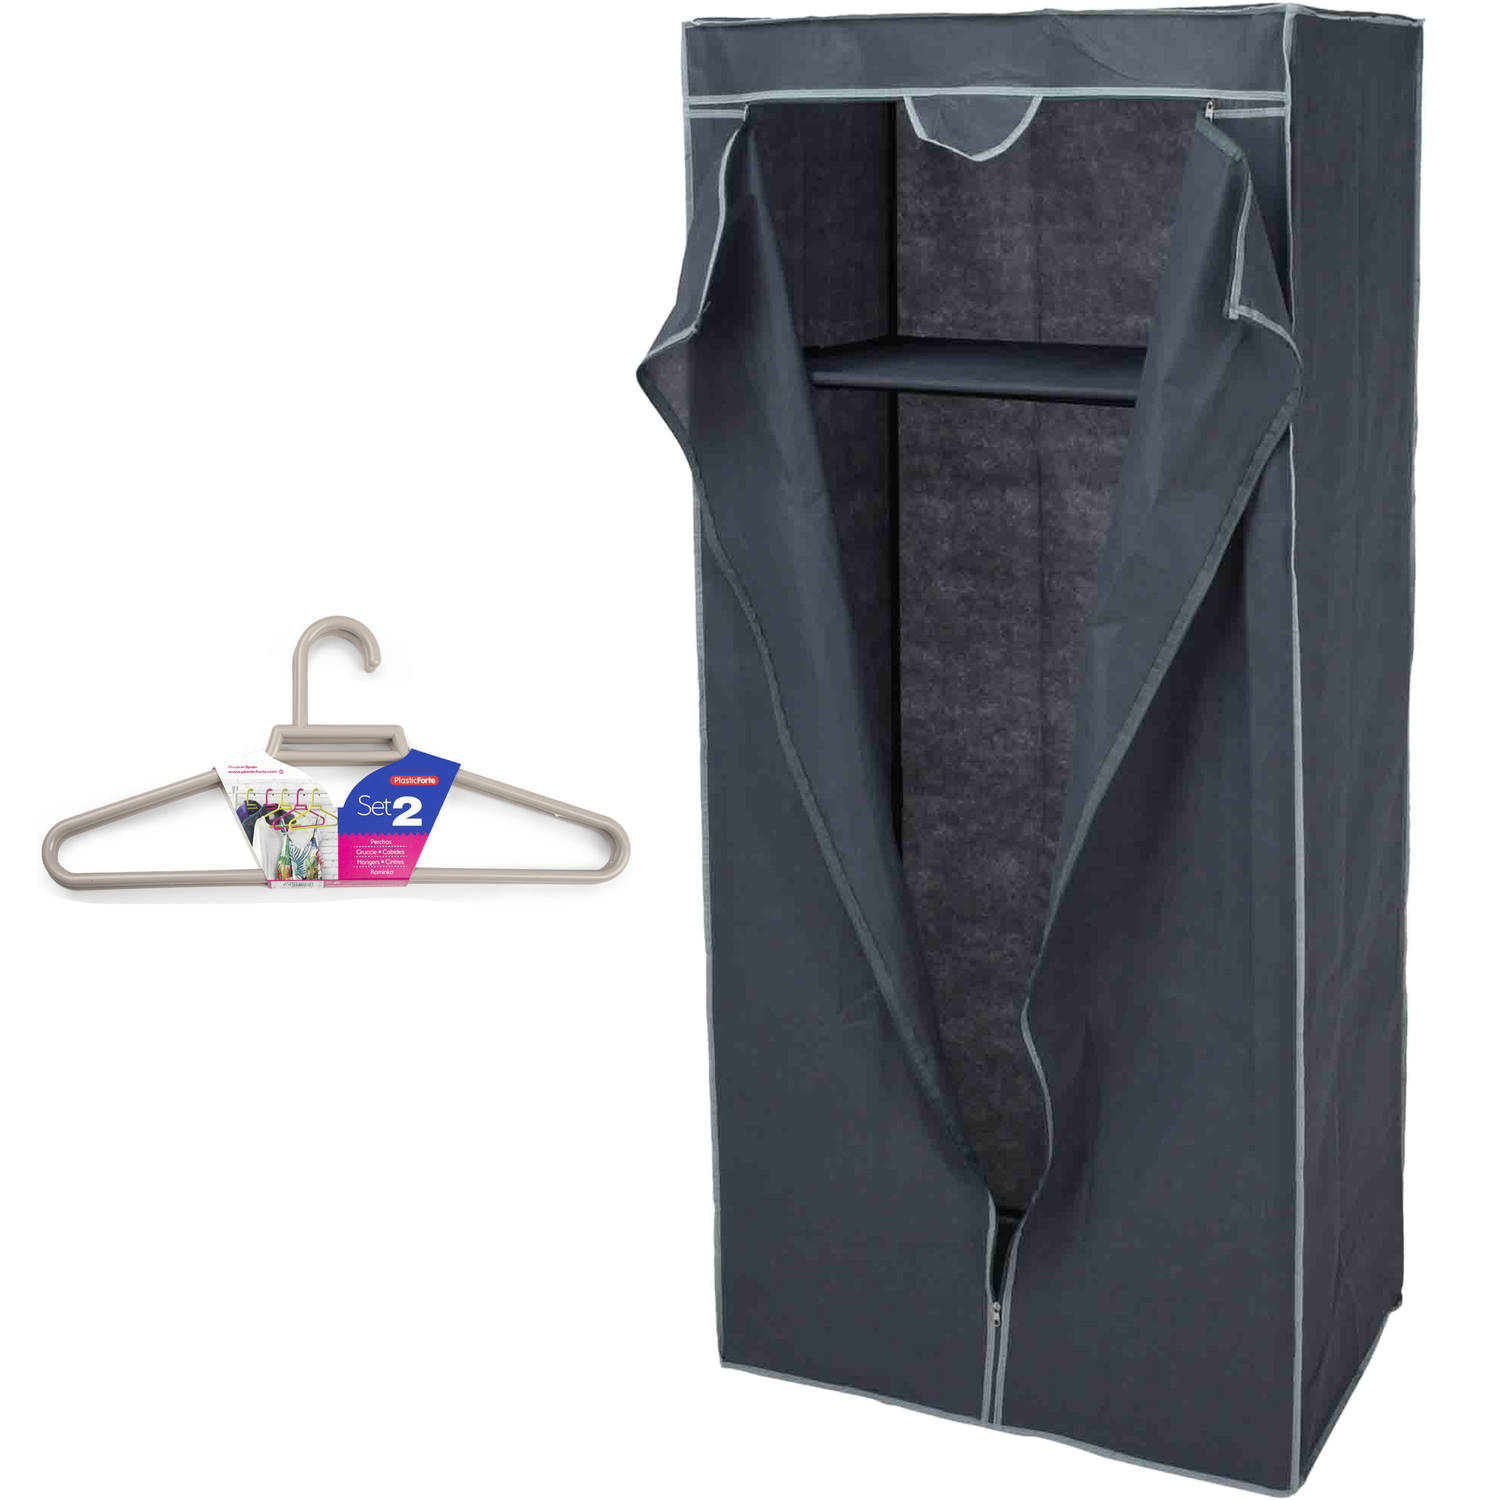 Mobiele opvouwbare kledingkast grijs 75 x 160 cm met 10x kledinghangers taupe Campingkledingkasten